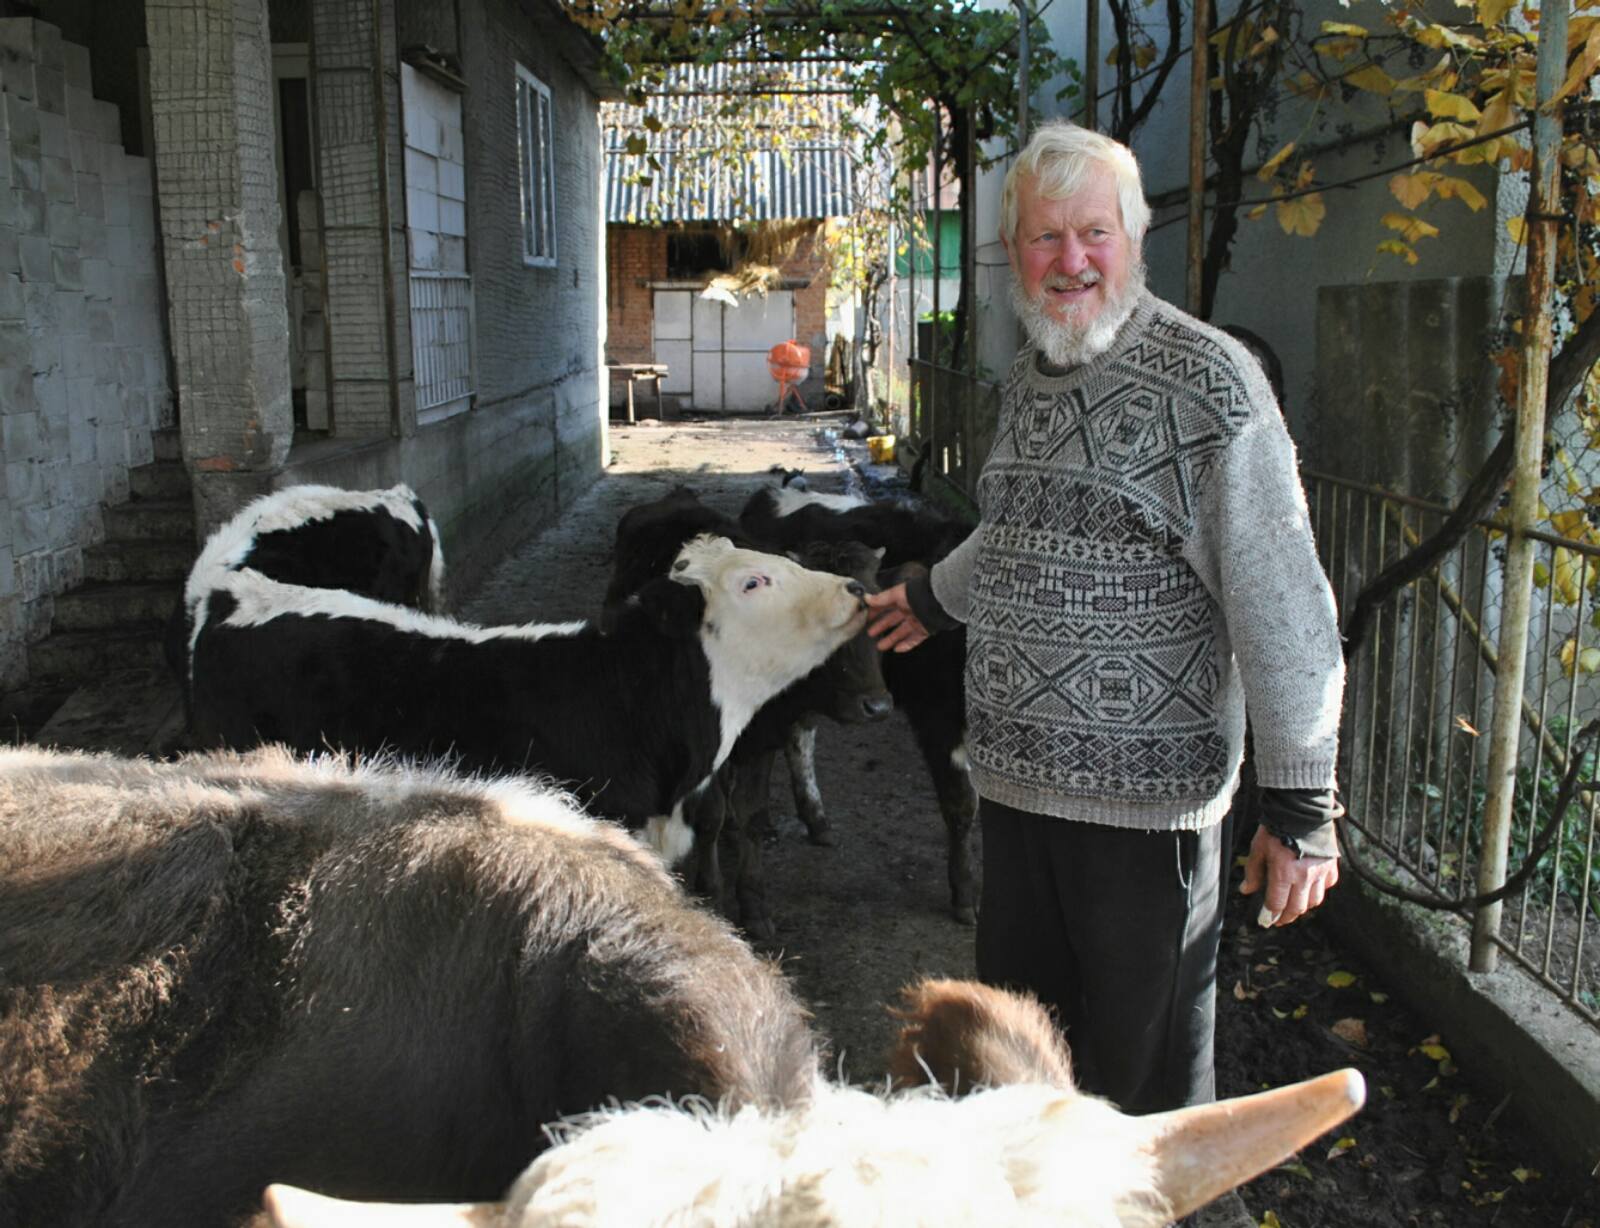 Фермер Василь Добош зустрічає гостей у супроводі допитливих телят. Фото автора